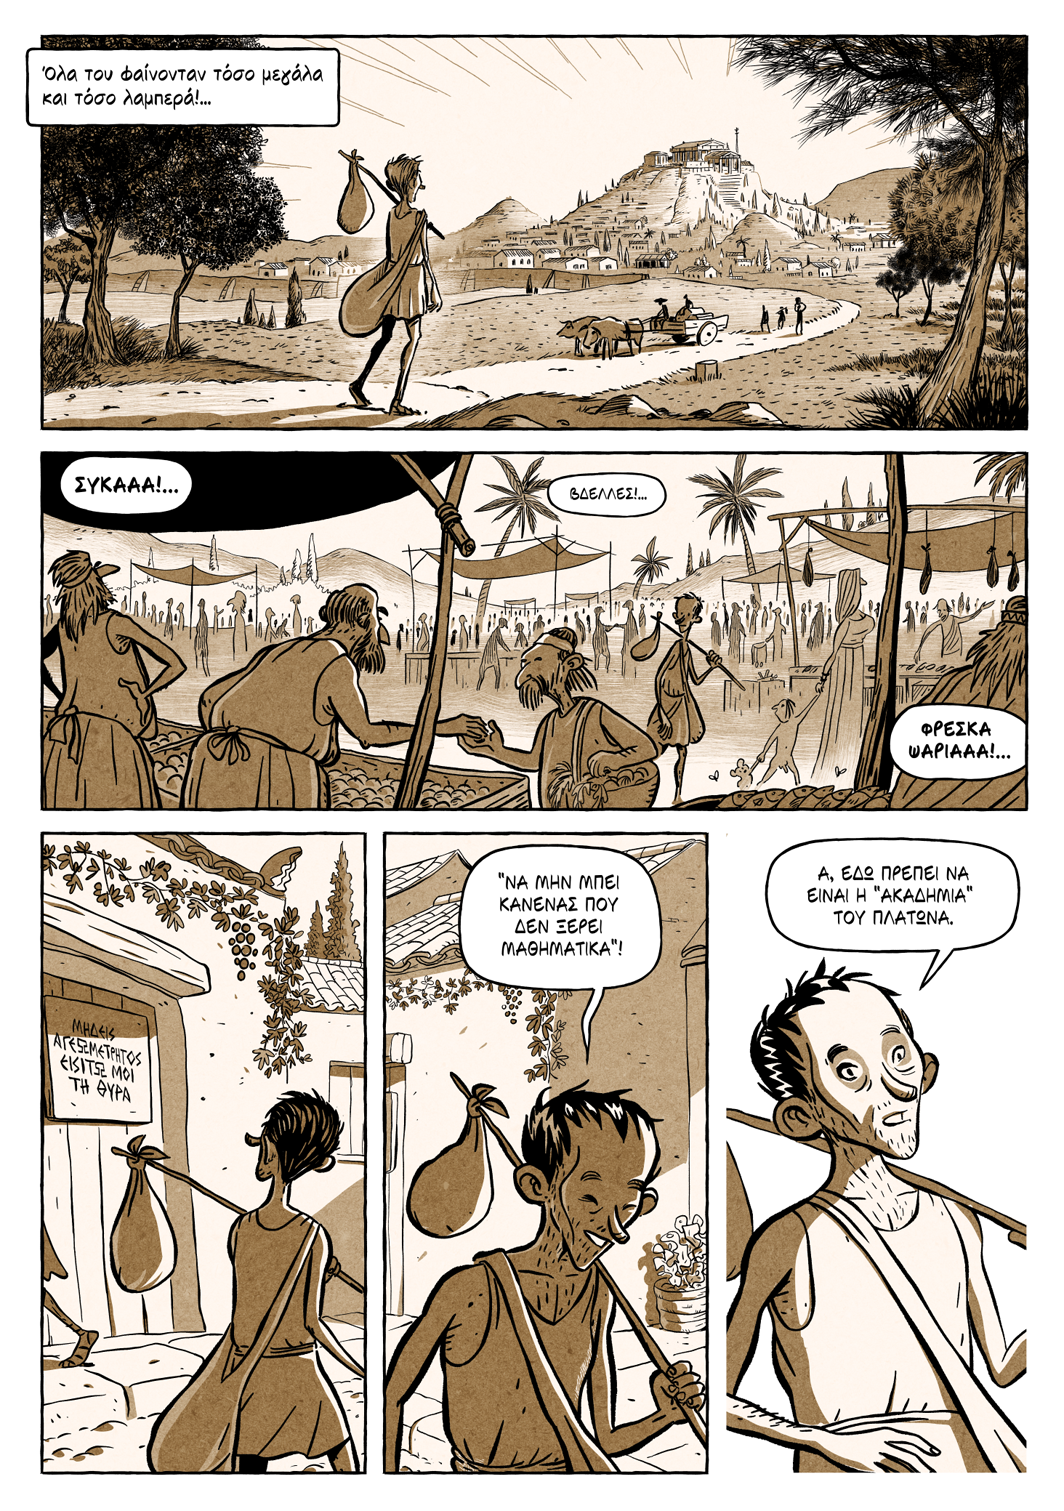 Πώς είναι να διαβάζεις Αριστοτέλη σε graphic novel; | Protagon.gr